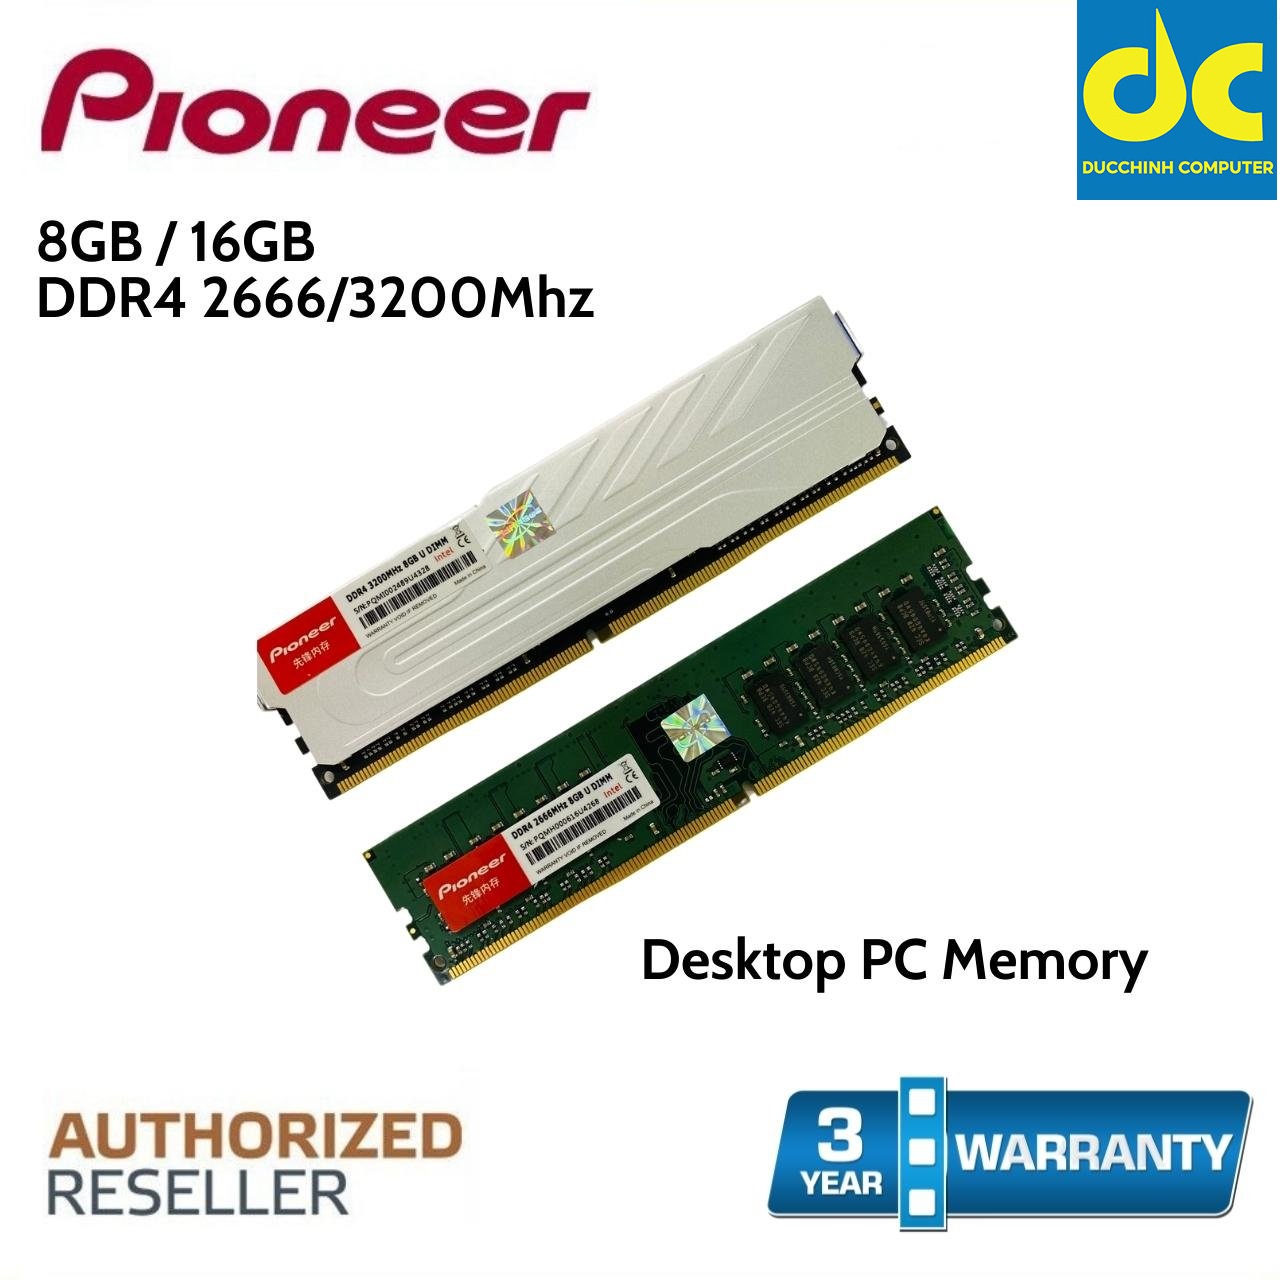 Ram DDR4 8GB DDR4 2666MHz 3200Mhz Pioneer Chính Hãng - BH 36 tháng 1 đổi 1